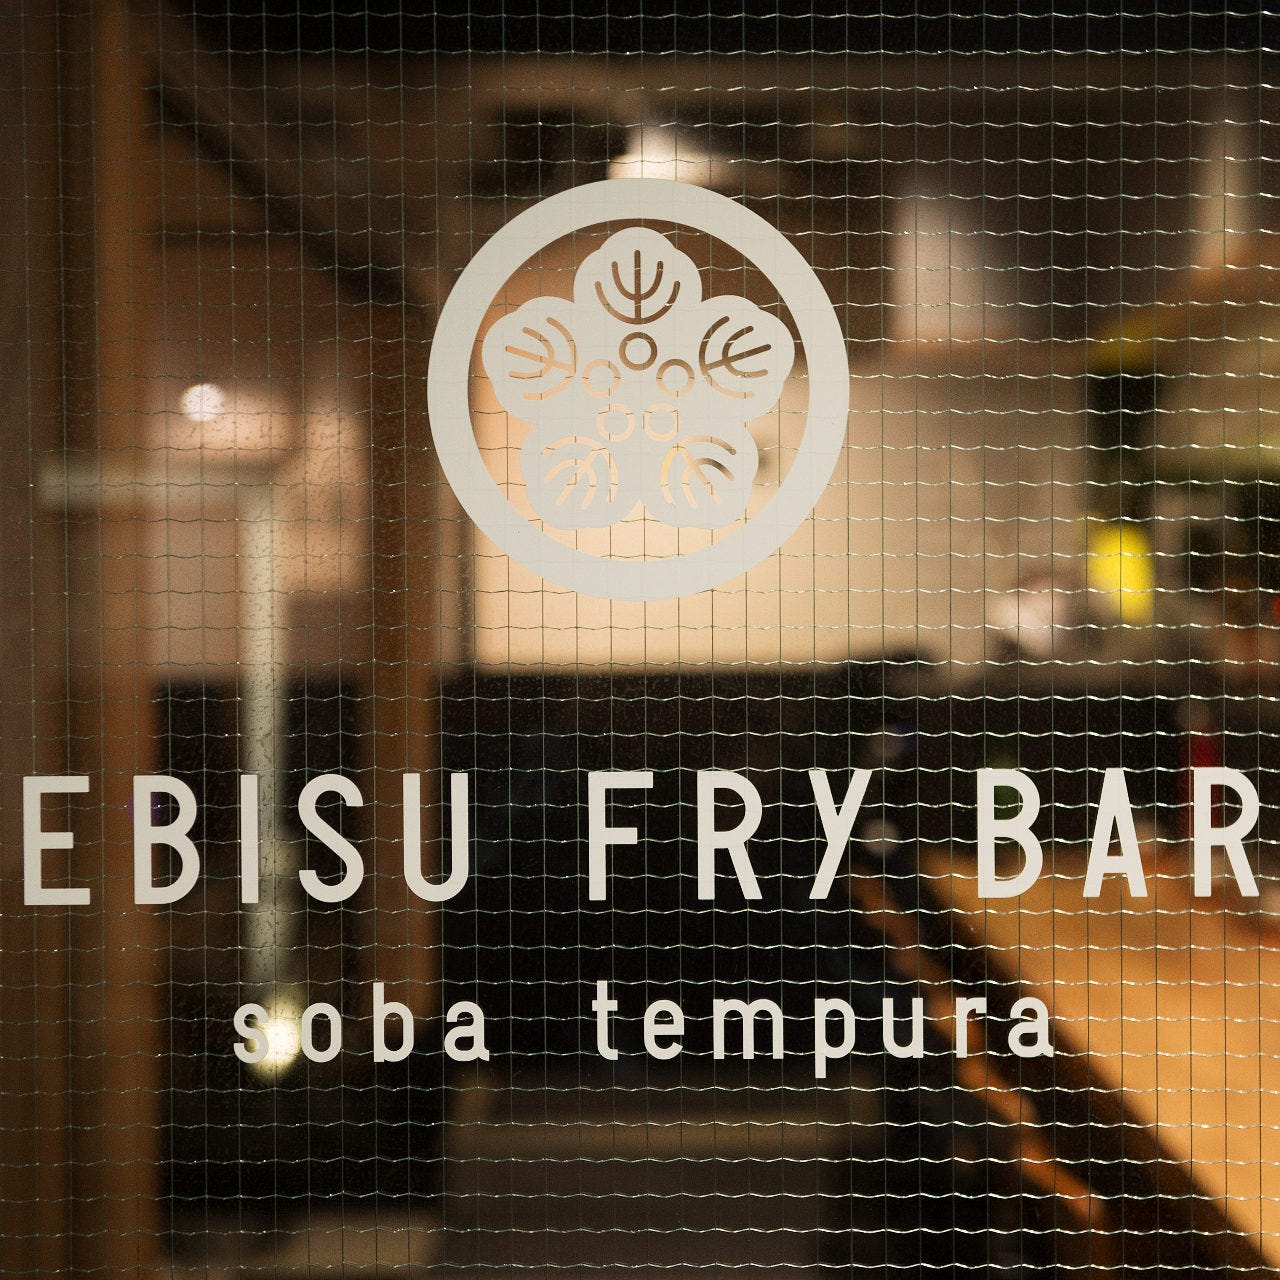 EBISU FRY BAR (エビスフライバル) image